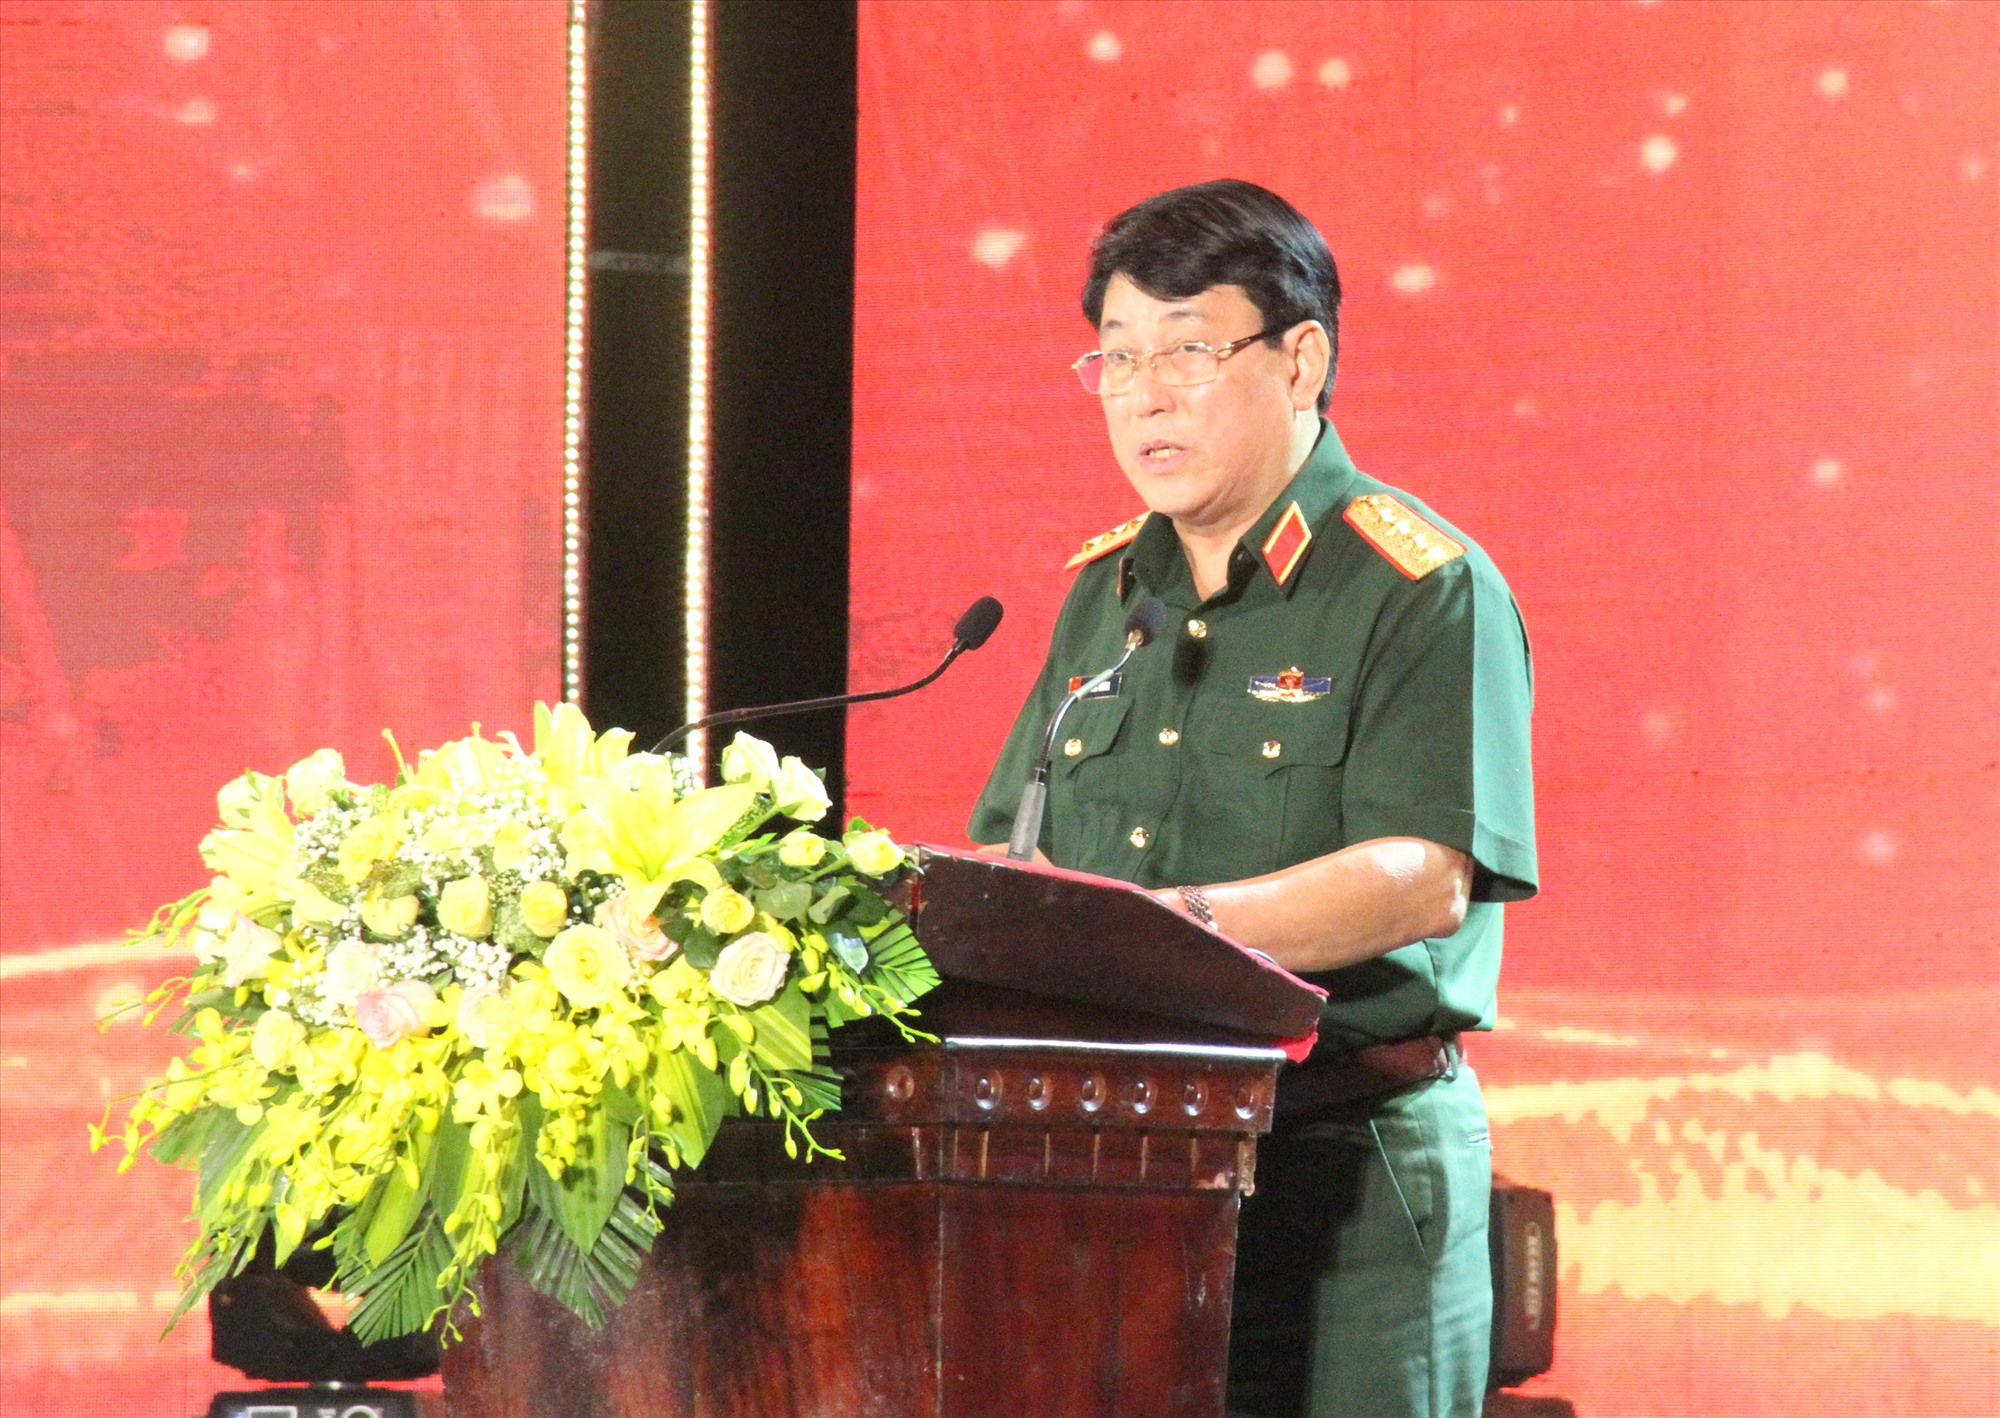 Ủy viên Bộ Chính trị, Chủ nhiệm Tổng cục Chính trị Quân đội Nhân dân Việt Nam, Đại tướng Lương Cường phát biểu tại chương trình - Ảnh: MĐ